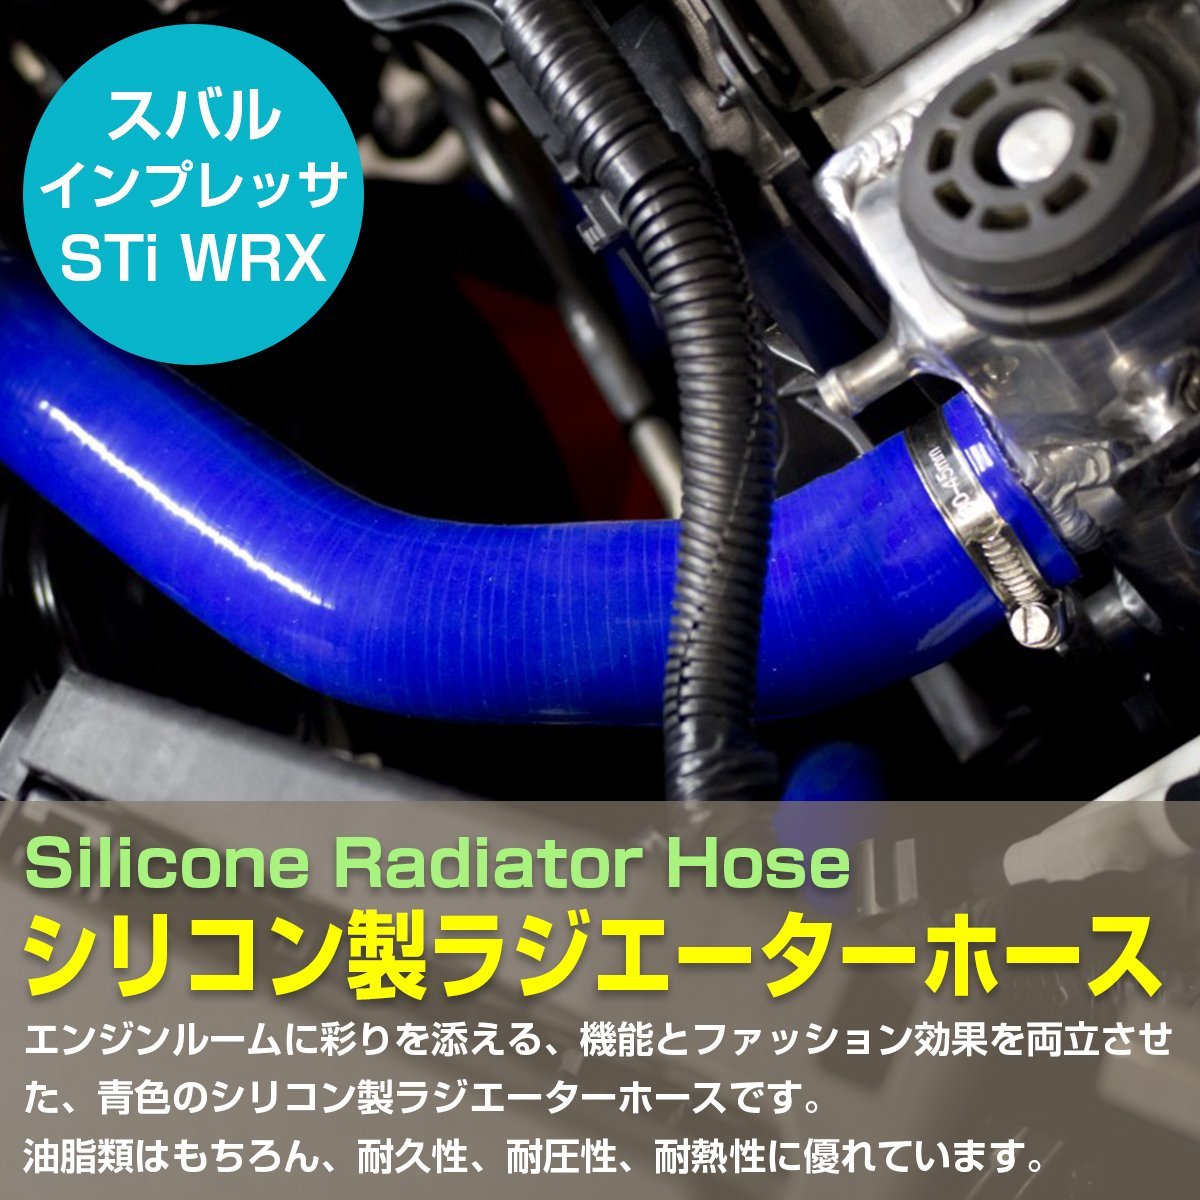 スバル GC8 インプレッサ STi WRX D-G型 EJ20搭載車 耐熱 耐久 抜群 7層シリコンホース ラジエーターホース ラジエターホース 10P ブルー_skh-003-s